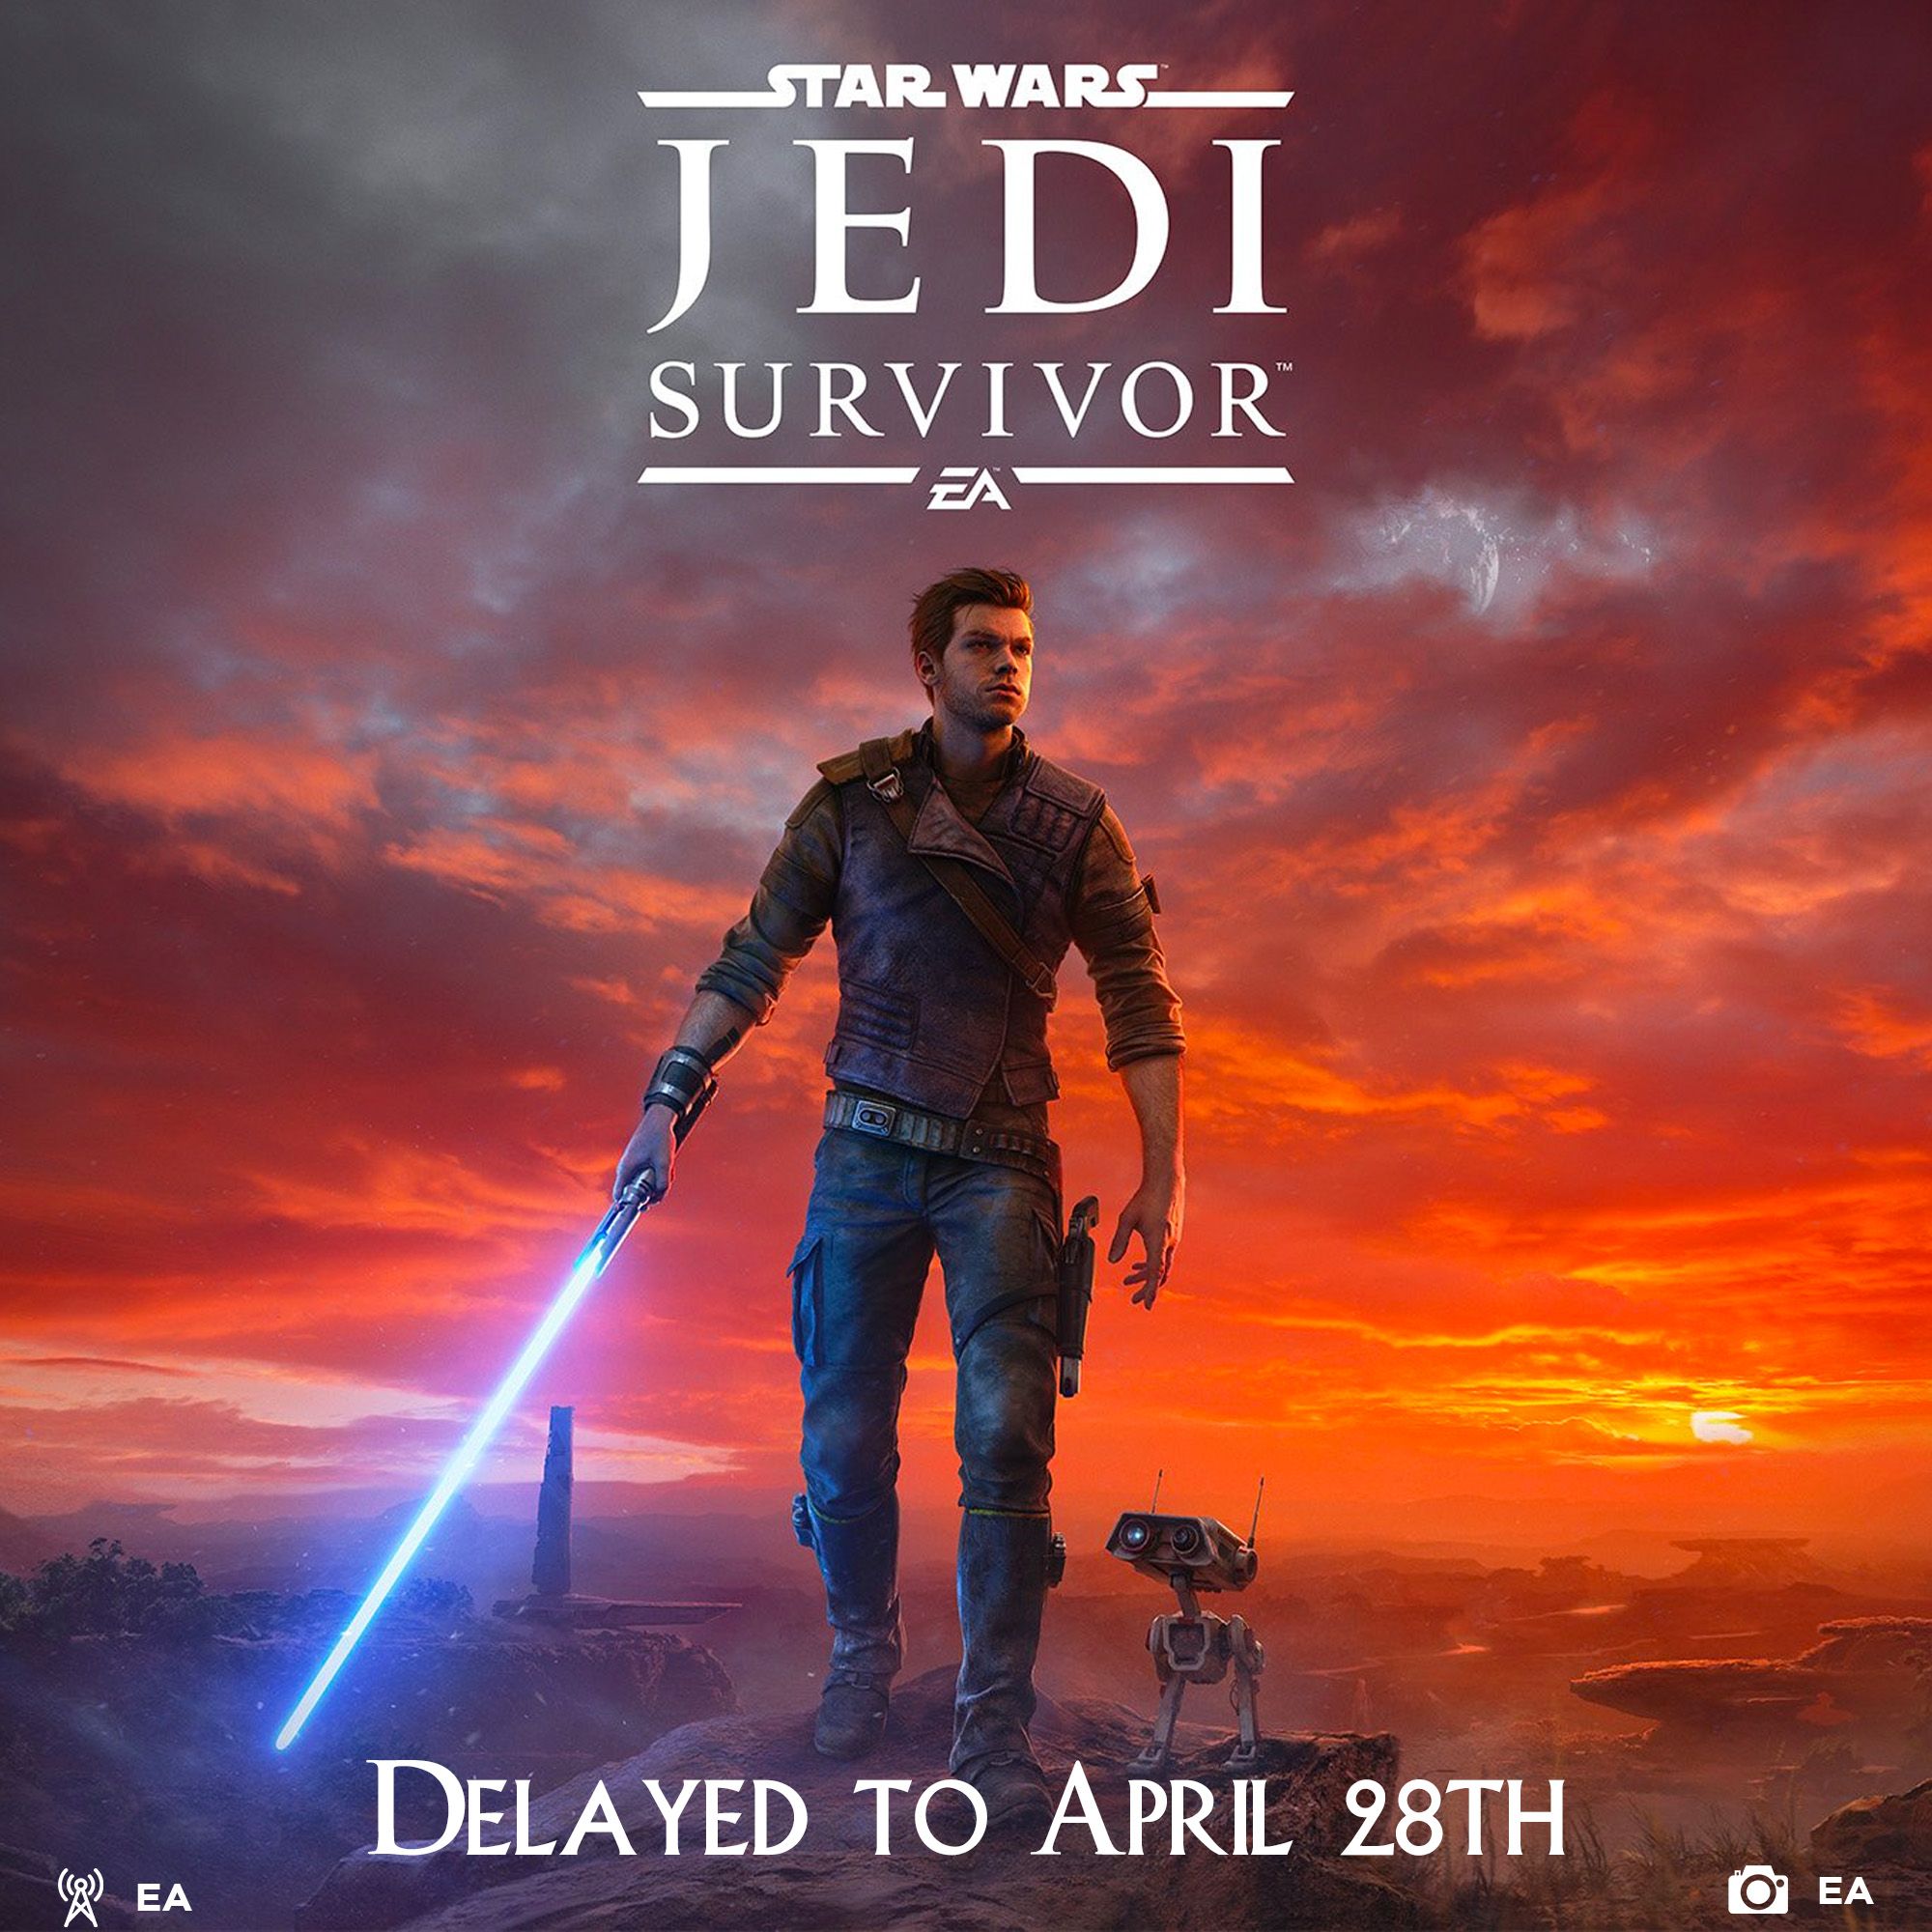 Star Wars Jedi Survivor delayed